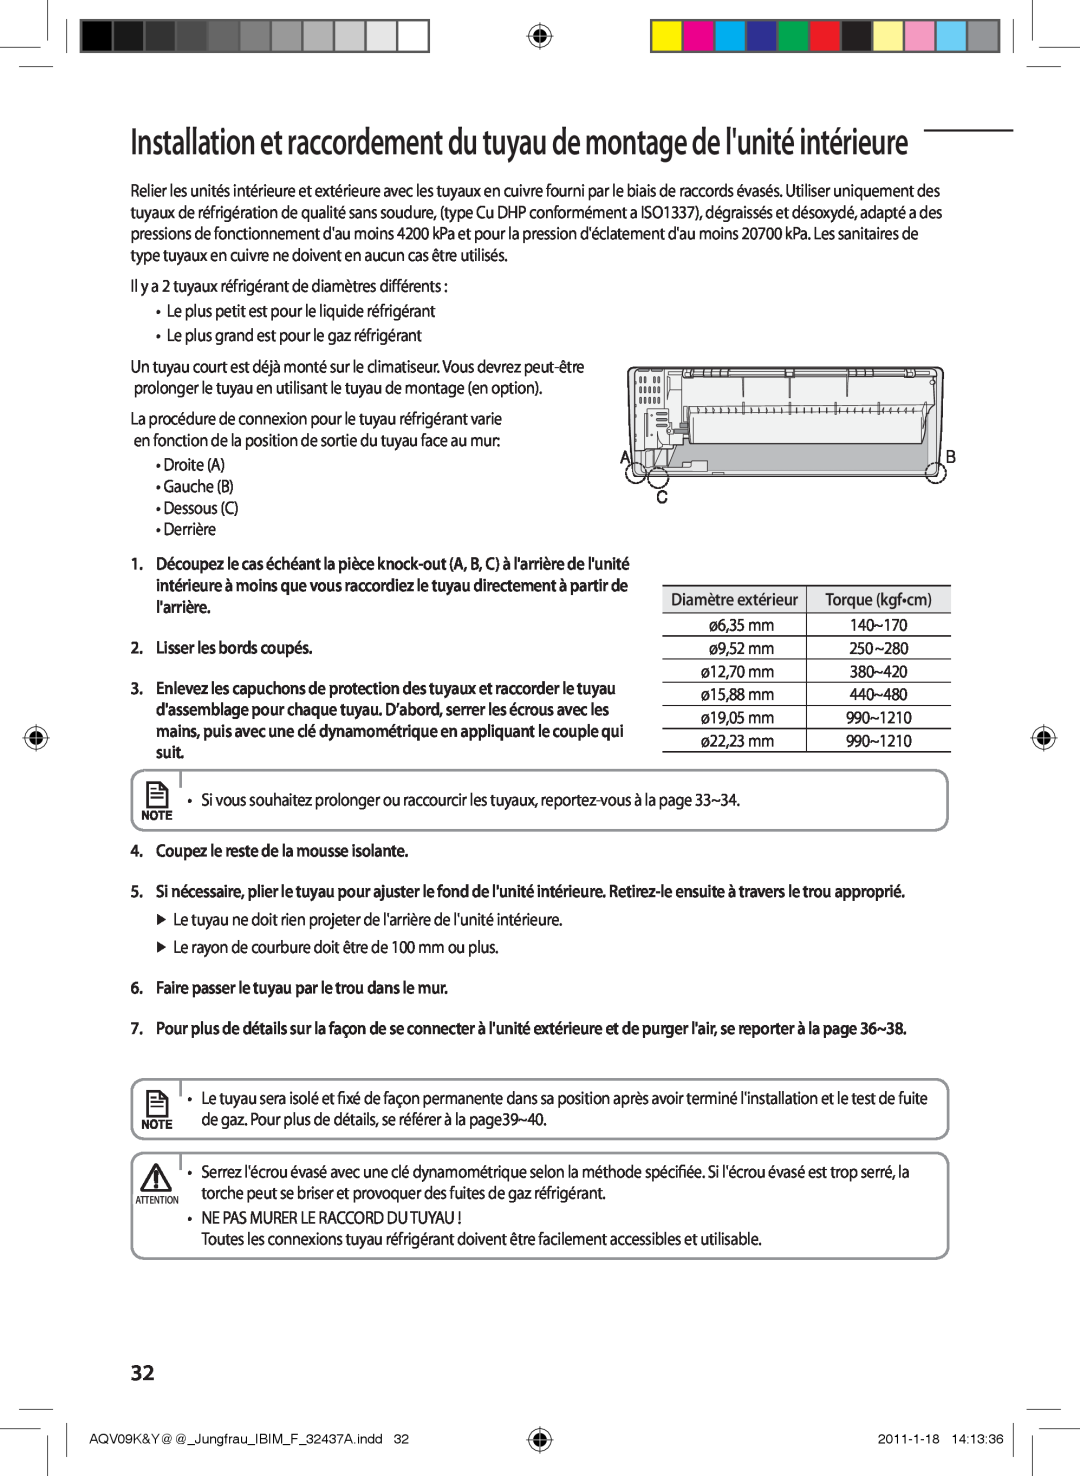 Samsung AQV18YWAX manual Installation et raccordement du tuyau de montage de lunité intérieure, Lisser les bords coupés 